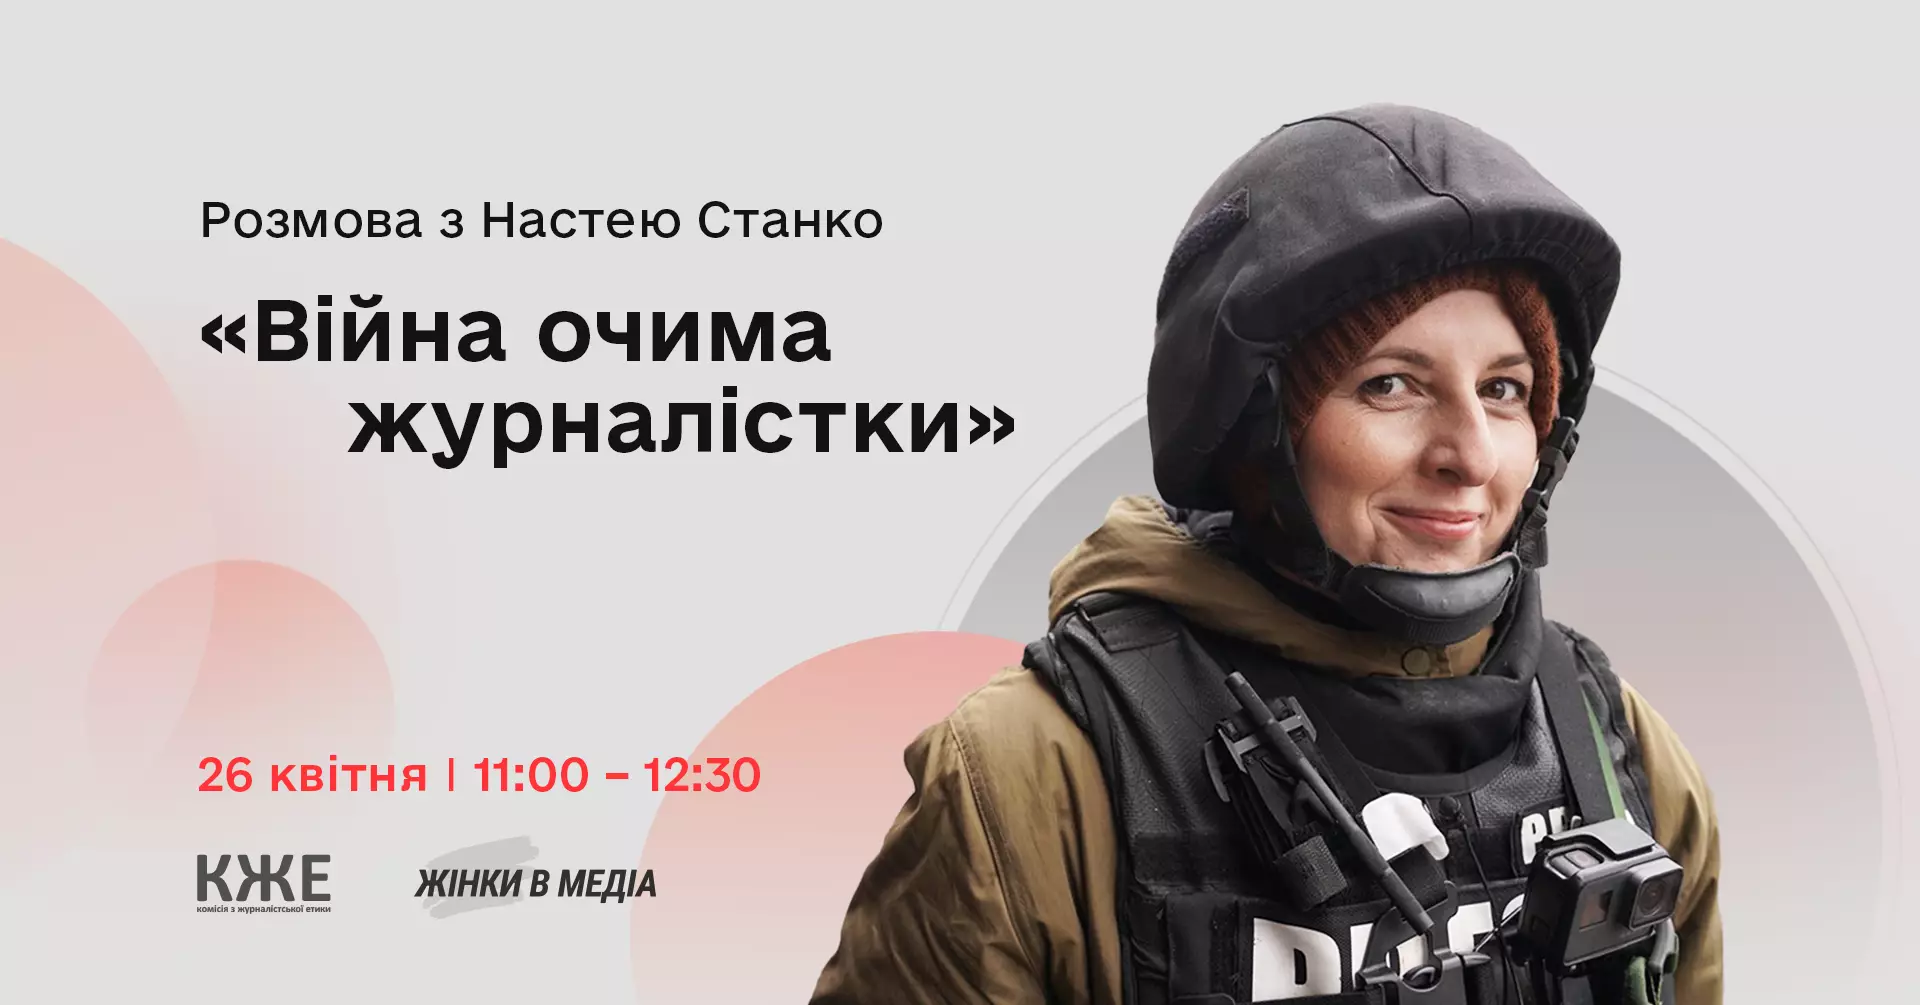 26 квітня — онлайн-розмова «Війна очима журналістки: розмова з Настею Станко»